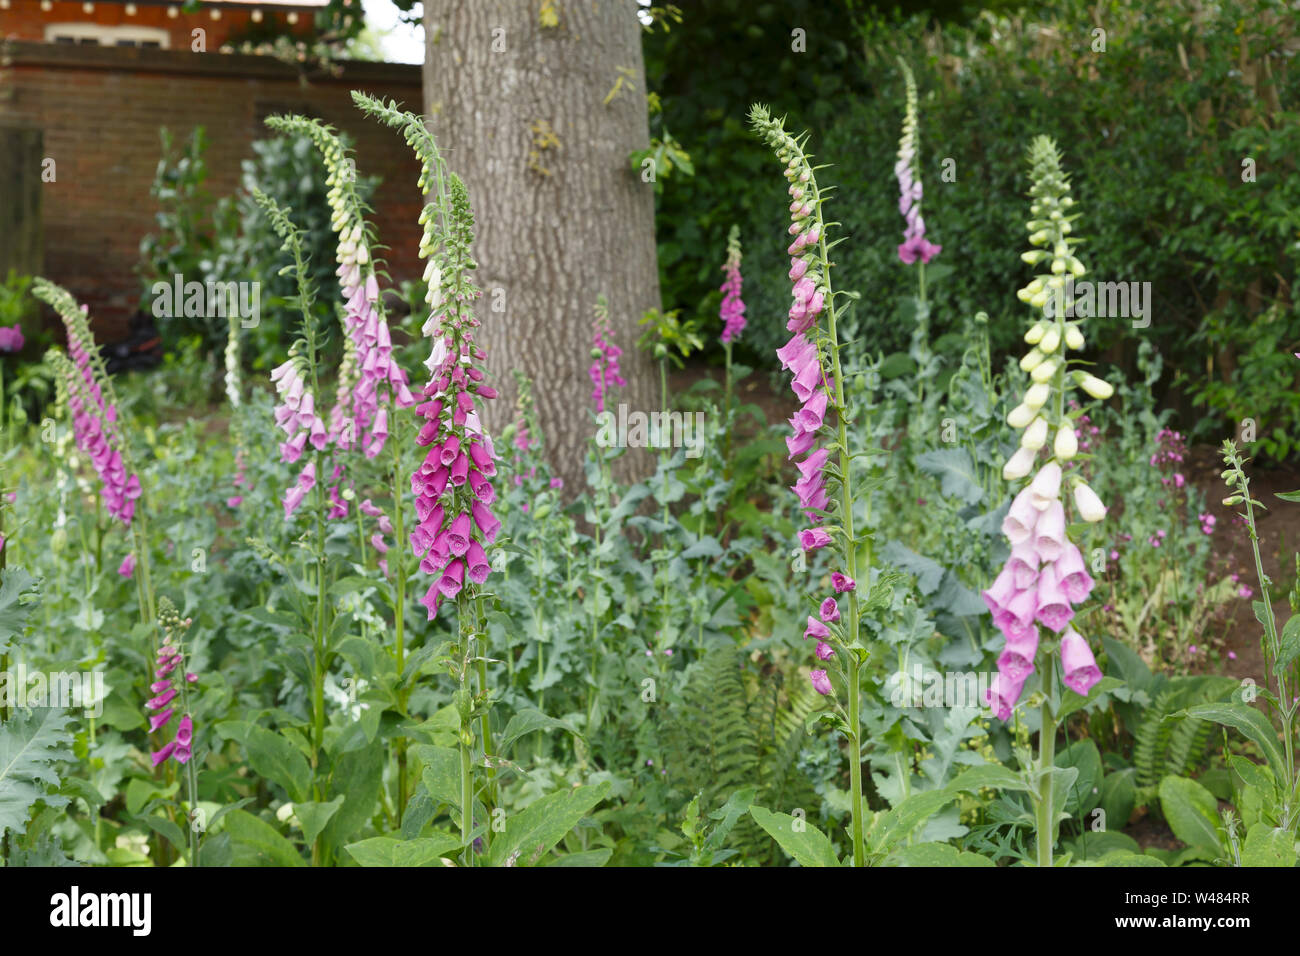 Digitales, commune Digitalis purpurea, dans un jardin boisé Banque D'Images